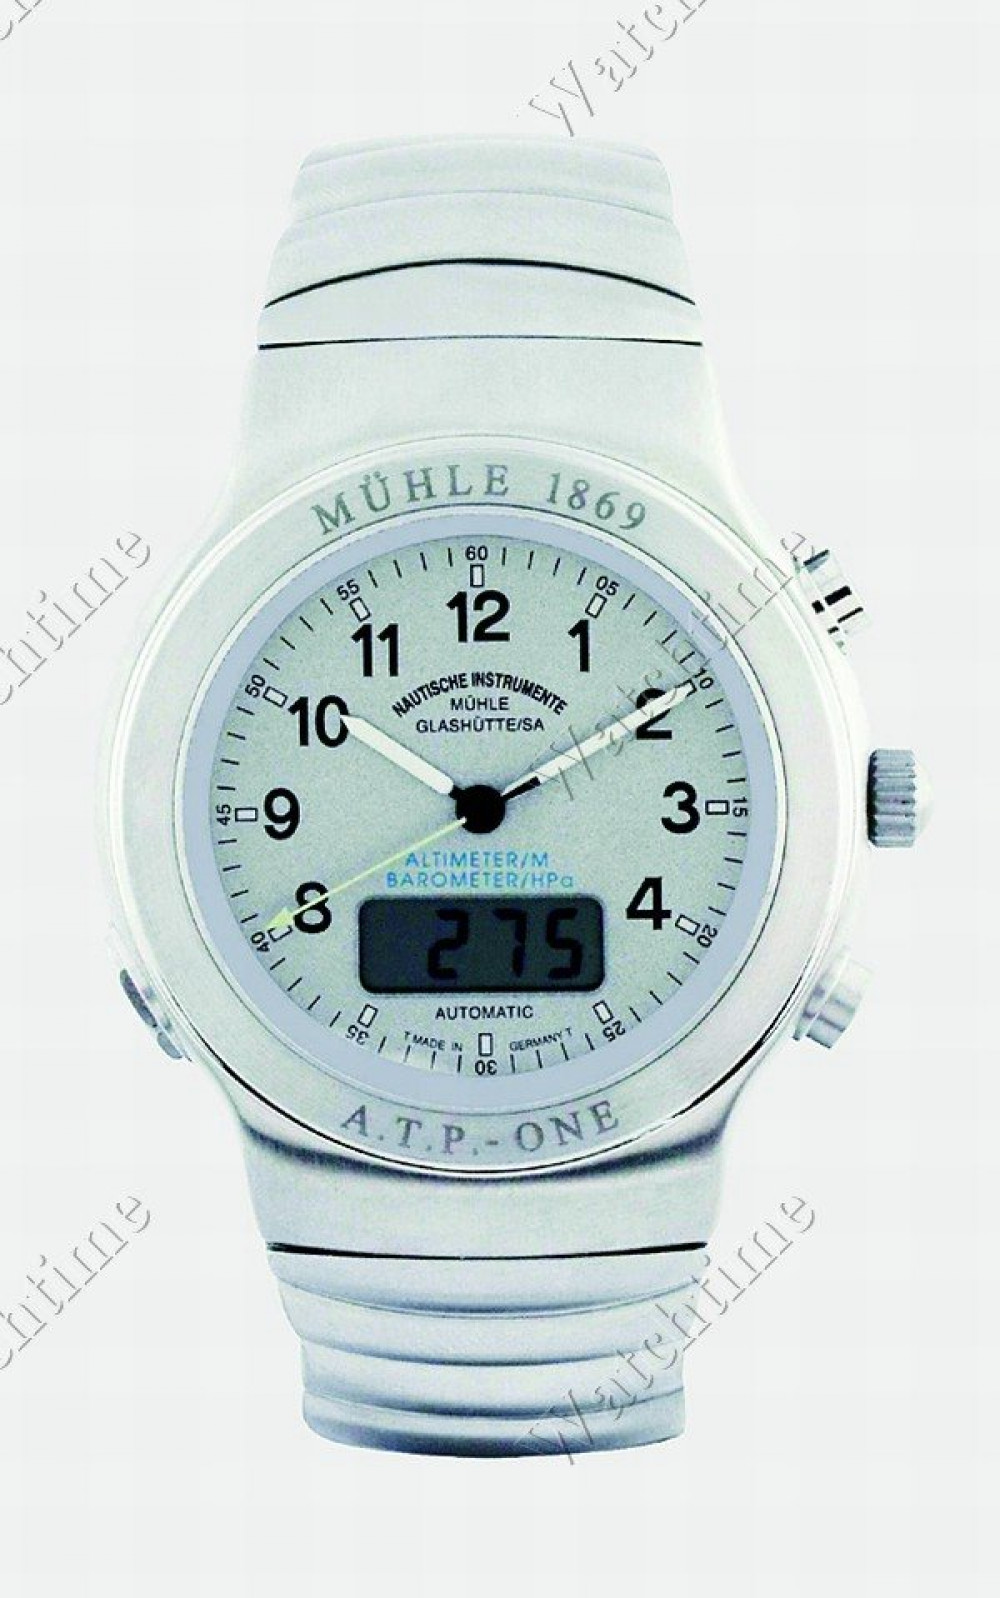 Zegarek firmy Mühle Nautische Instrumente, model A.T.P.-One